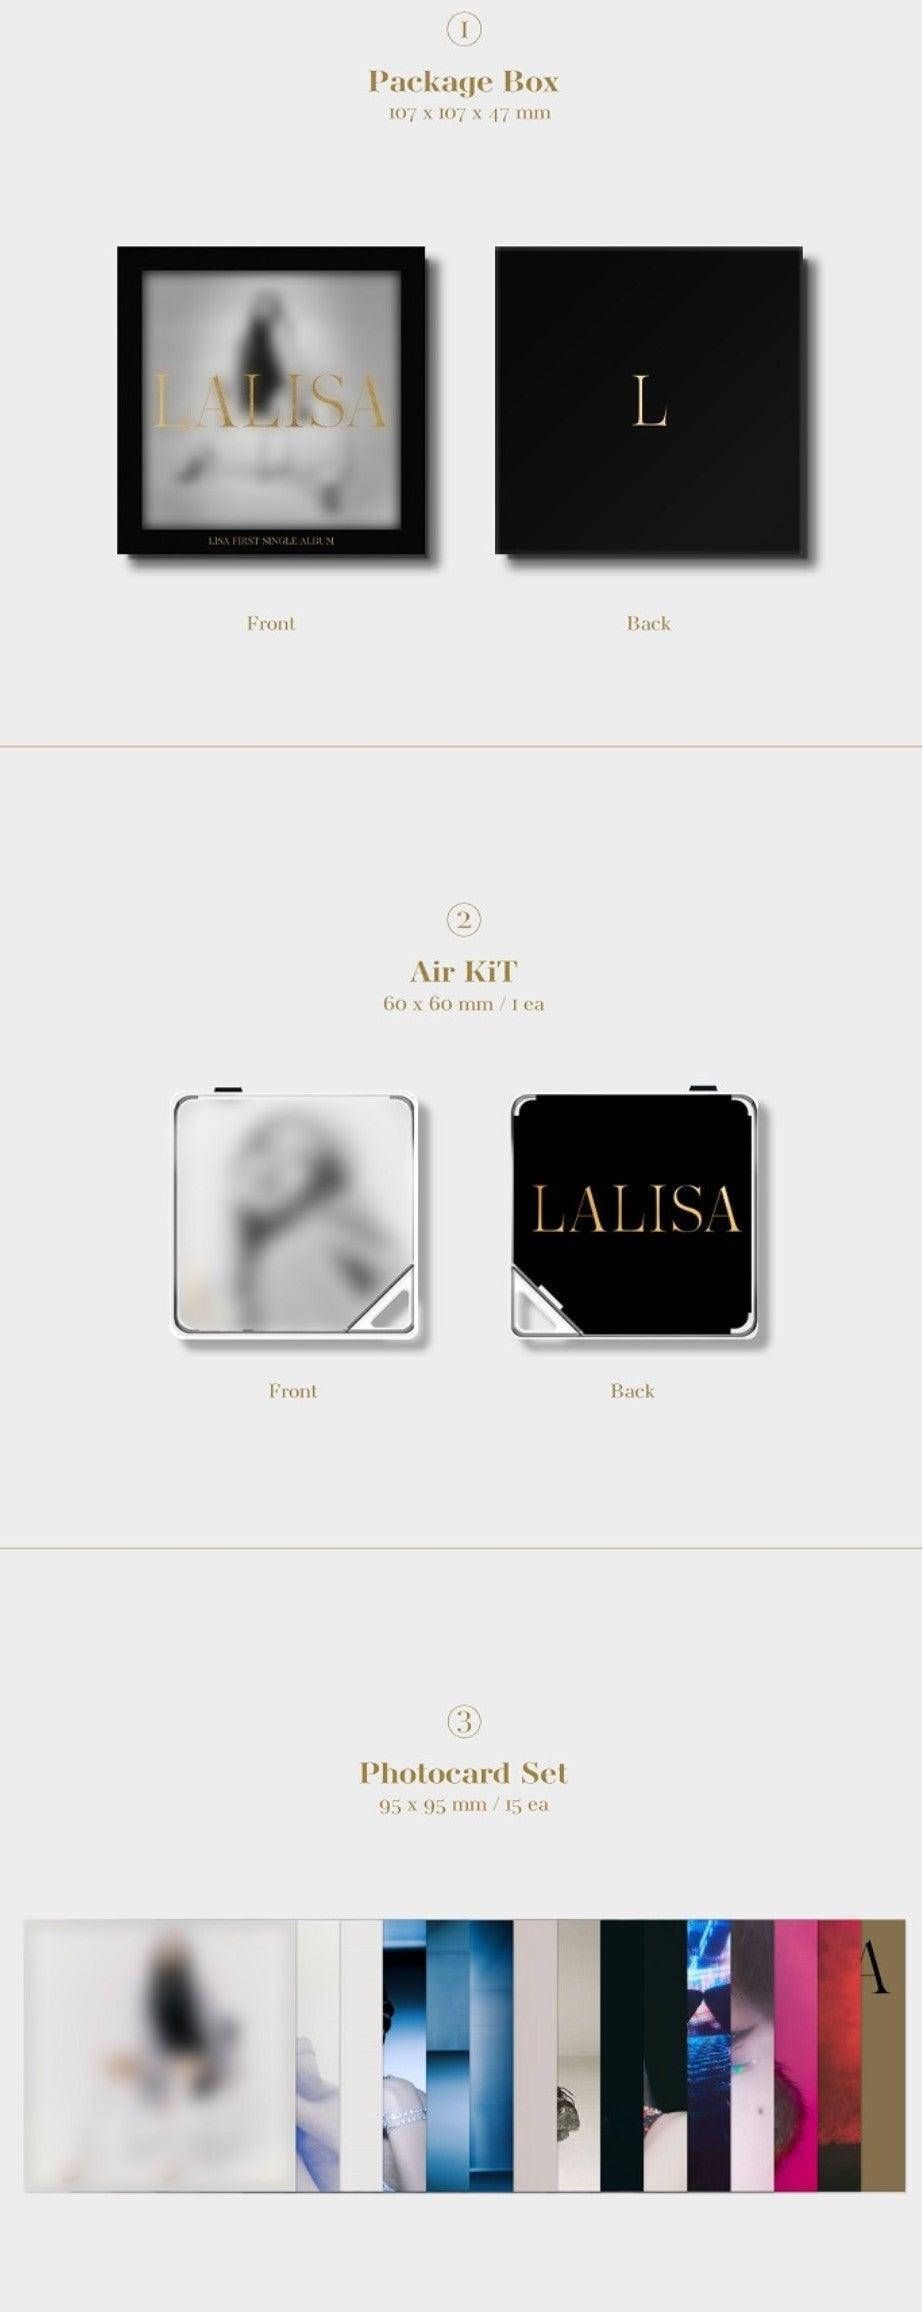 LISA - LISA FIRST SINGLE ALBUM LALISA KiT ALBUM - J-Store Online